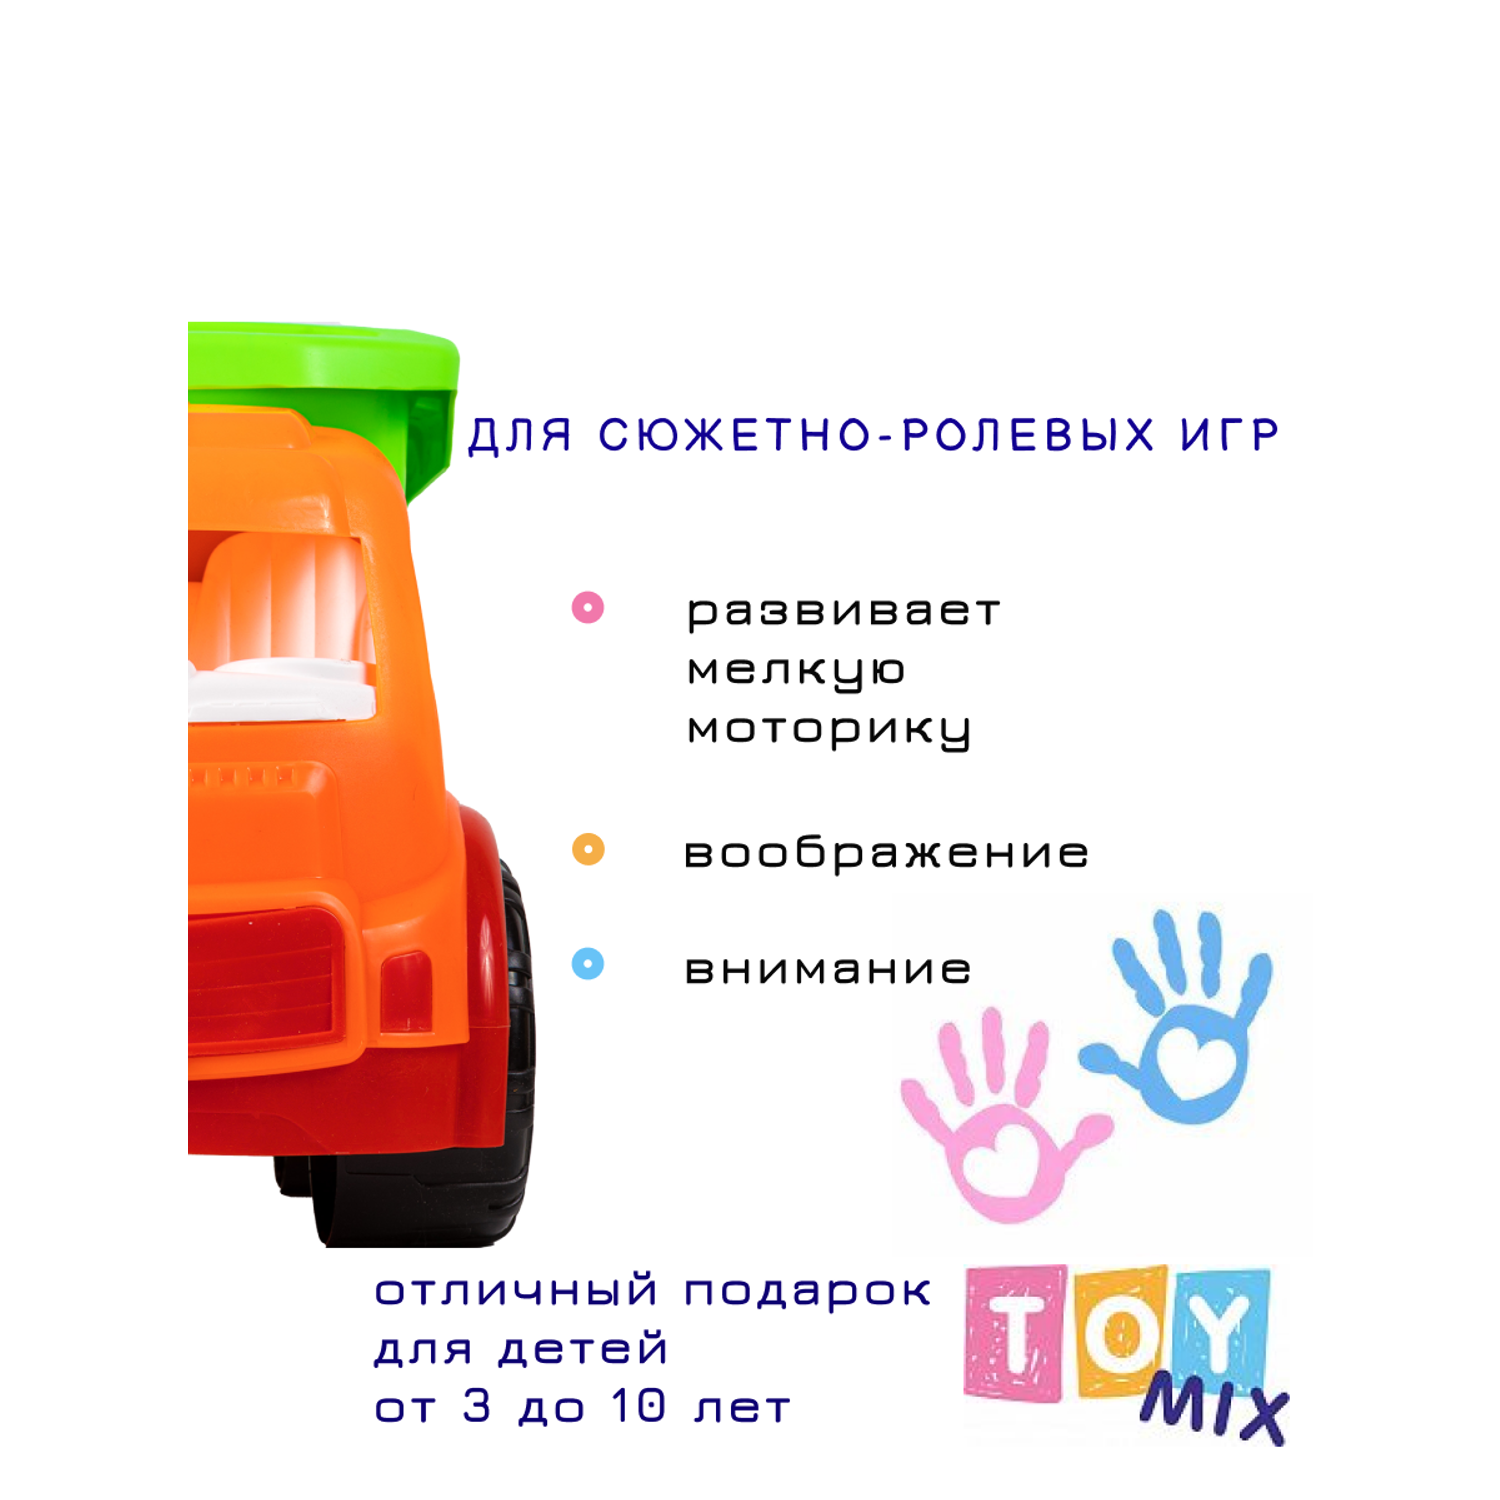 Машина TOY MIX Грузовик размер 39 см РР 2017-024 - фото 6